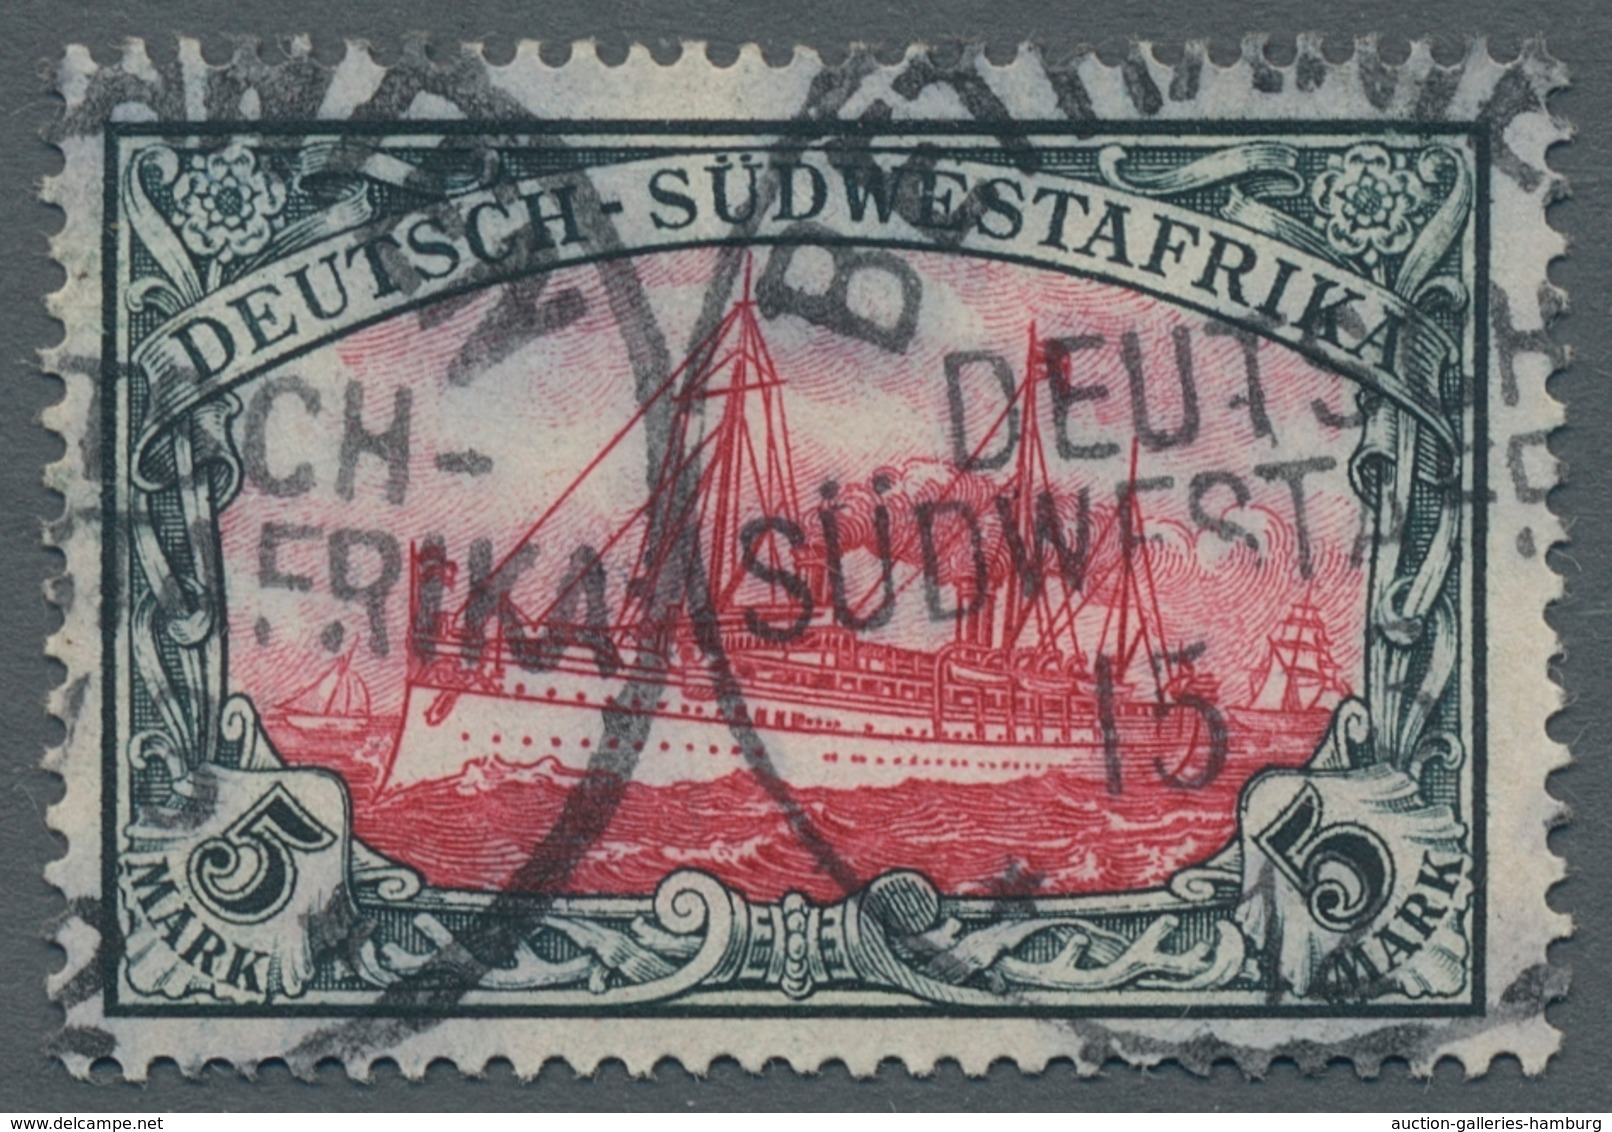 Deutsche Auslandspostämter + Kolonien: 1884-1919, reichhaltige gestempelte Sammlung im "Lindner Falz